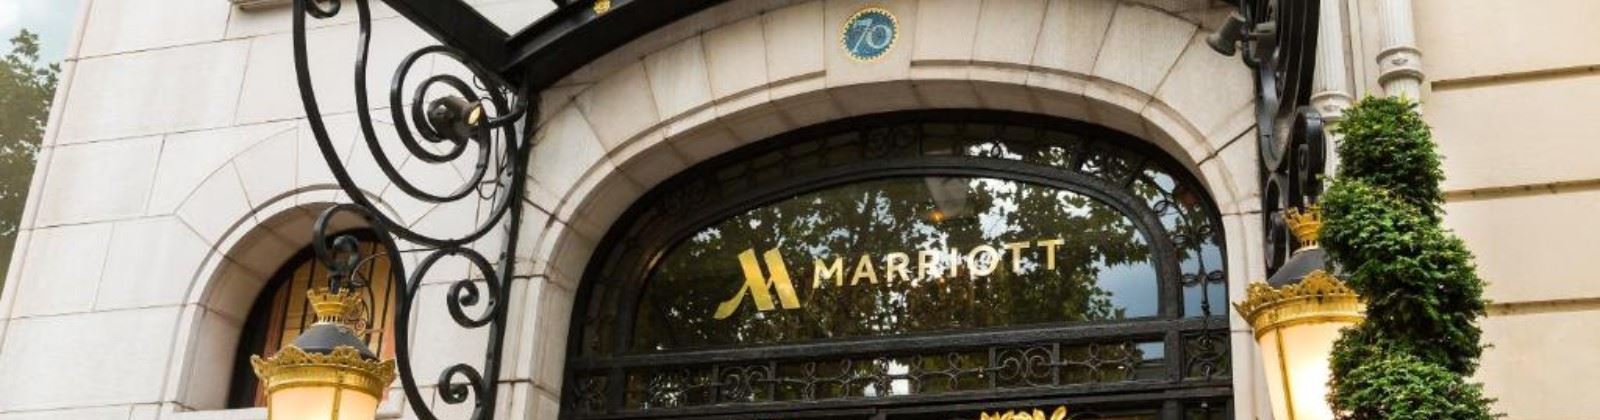 OLEVENE image - marriott-champs-elysees-olevene-hotel-restaurant-conference-